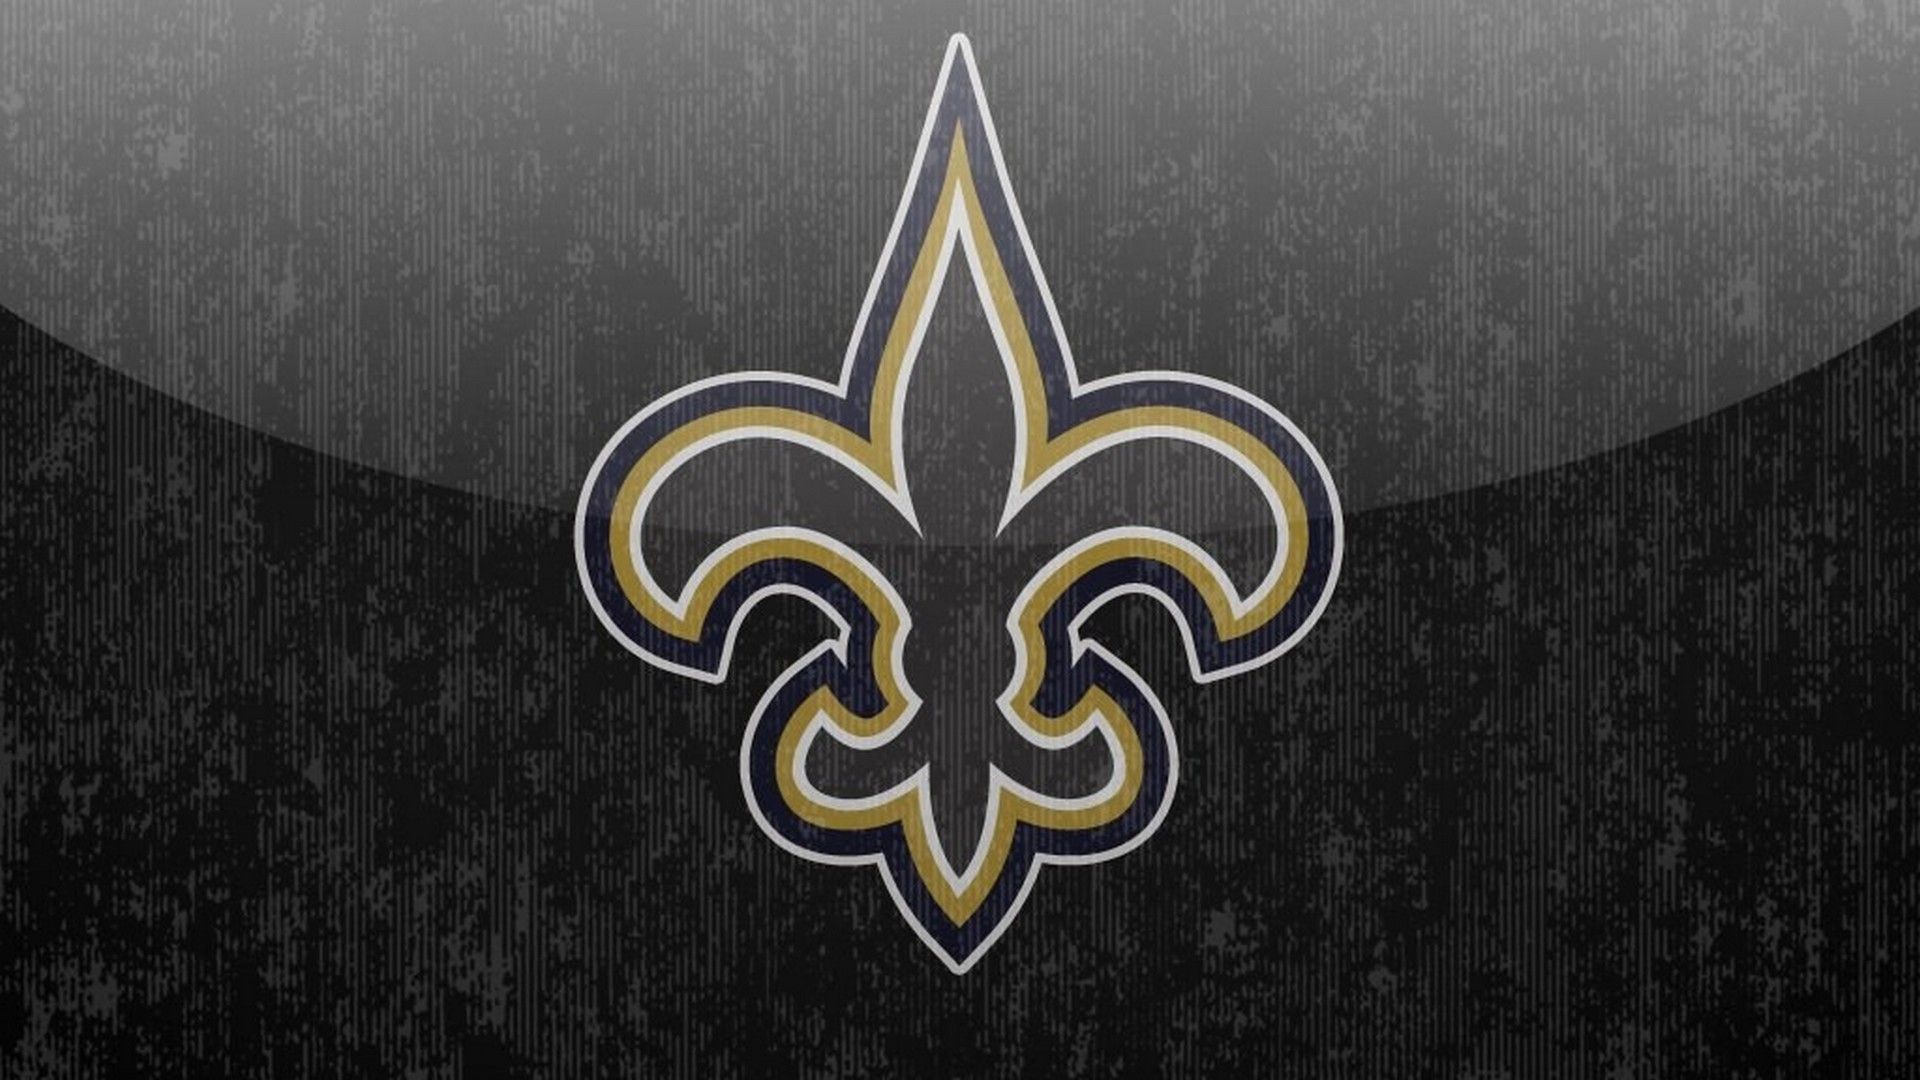 New Orleans Saints Wallpaper Free New Orleans Saints